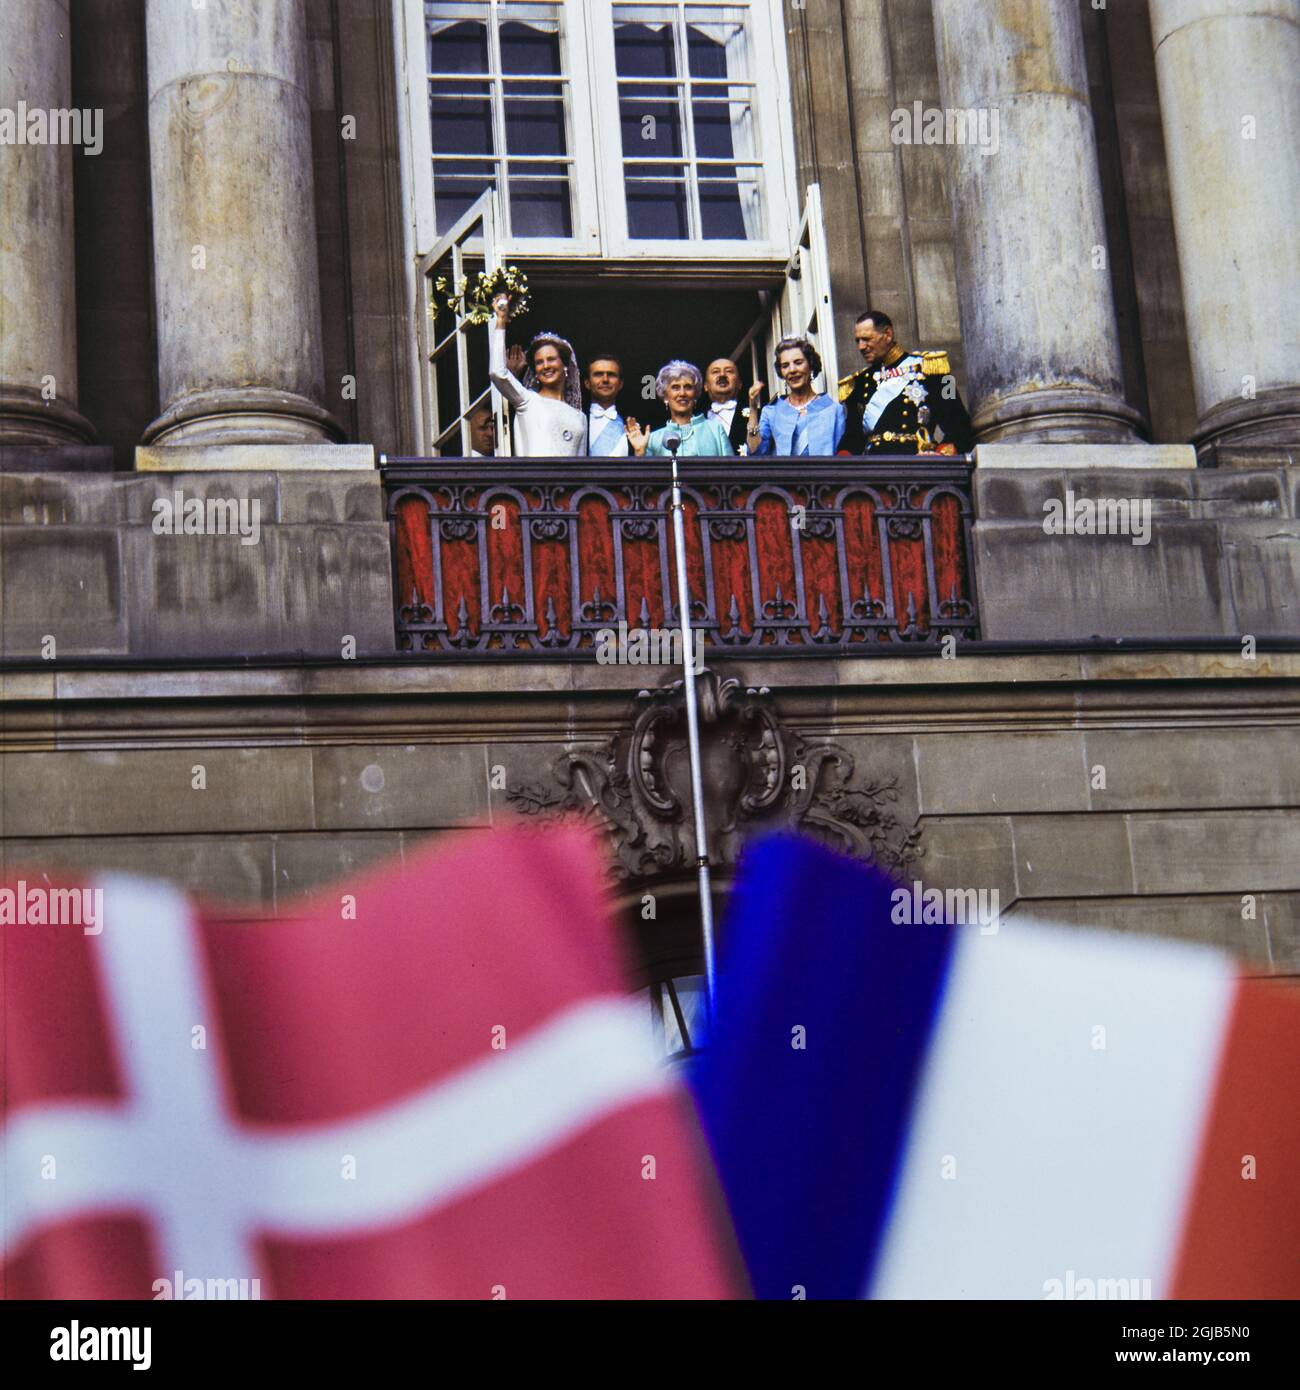 KÃ–PENHAMN 1967-06-10 le mariage de la princesse de la Couronne Margrethe du Danemark et du prince henrik Henrik au Palais Amalienborg Foto: Christer Kindahl / Kamerabild / TT / Kod: 3019 Banque D'Images